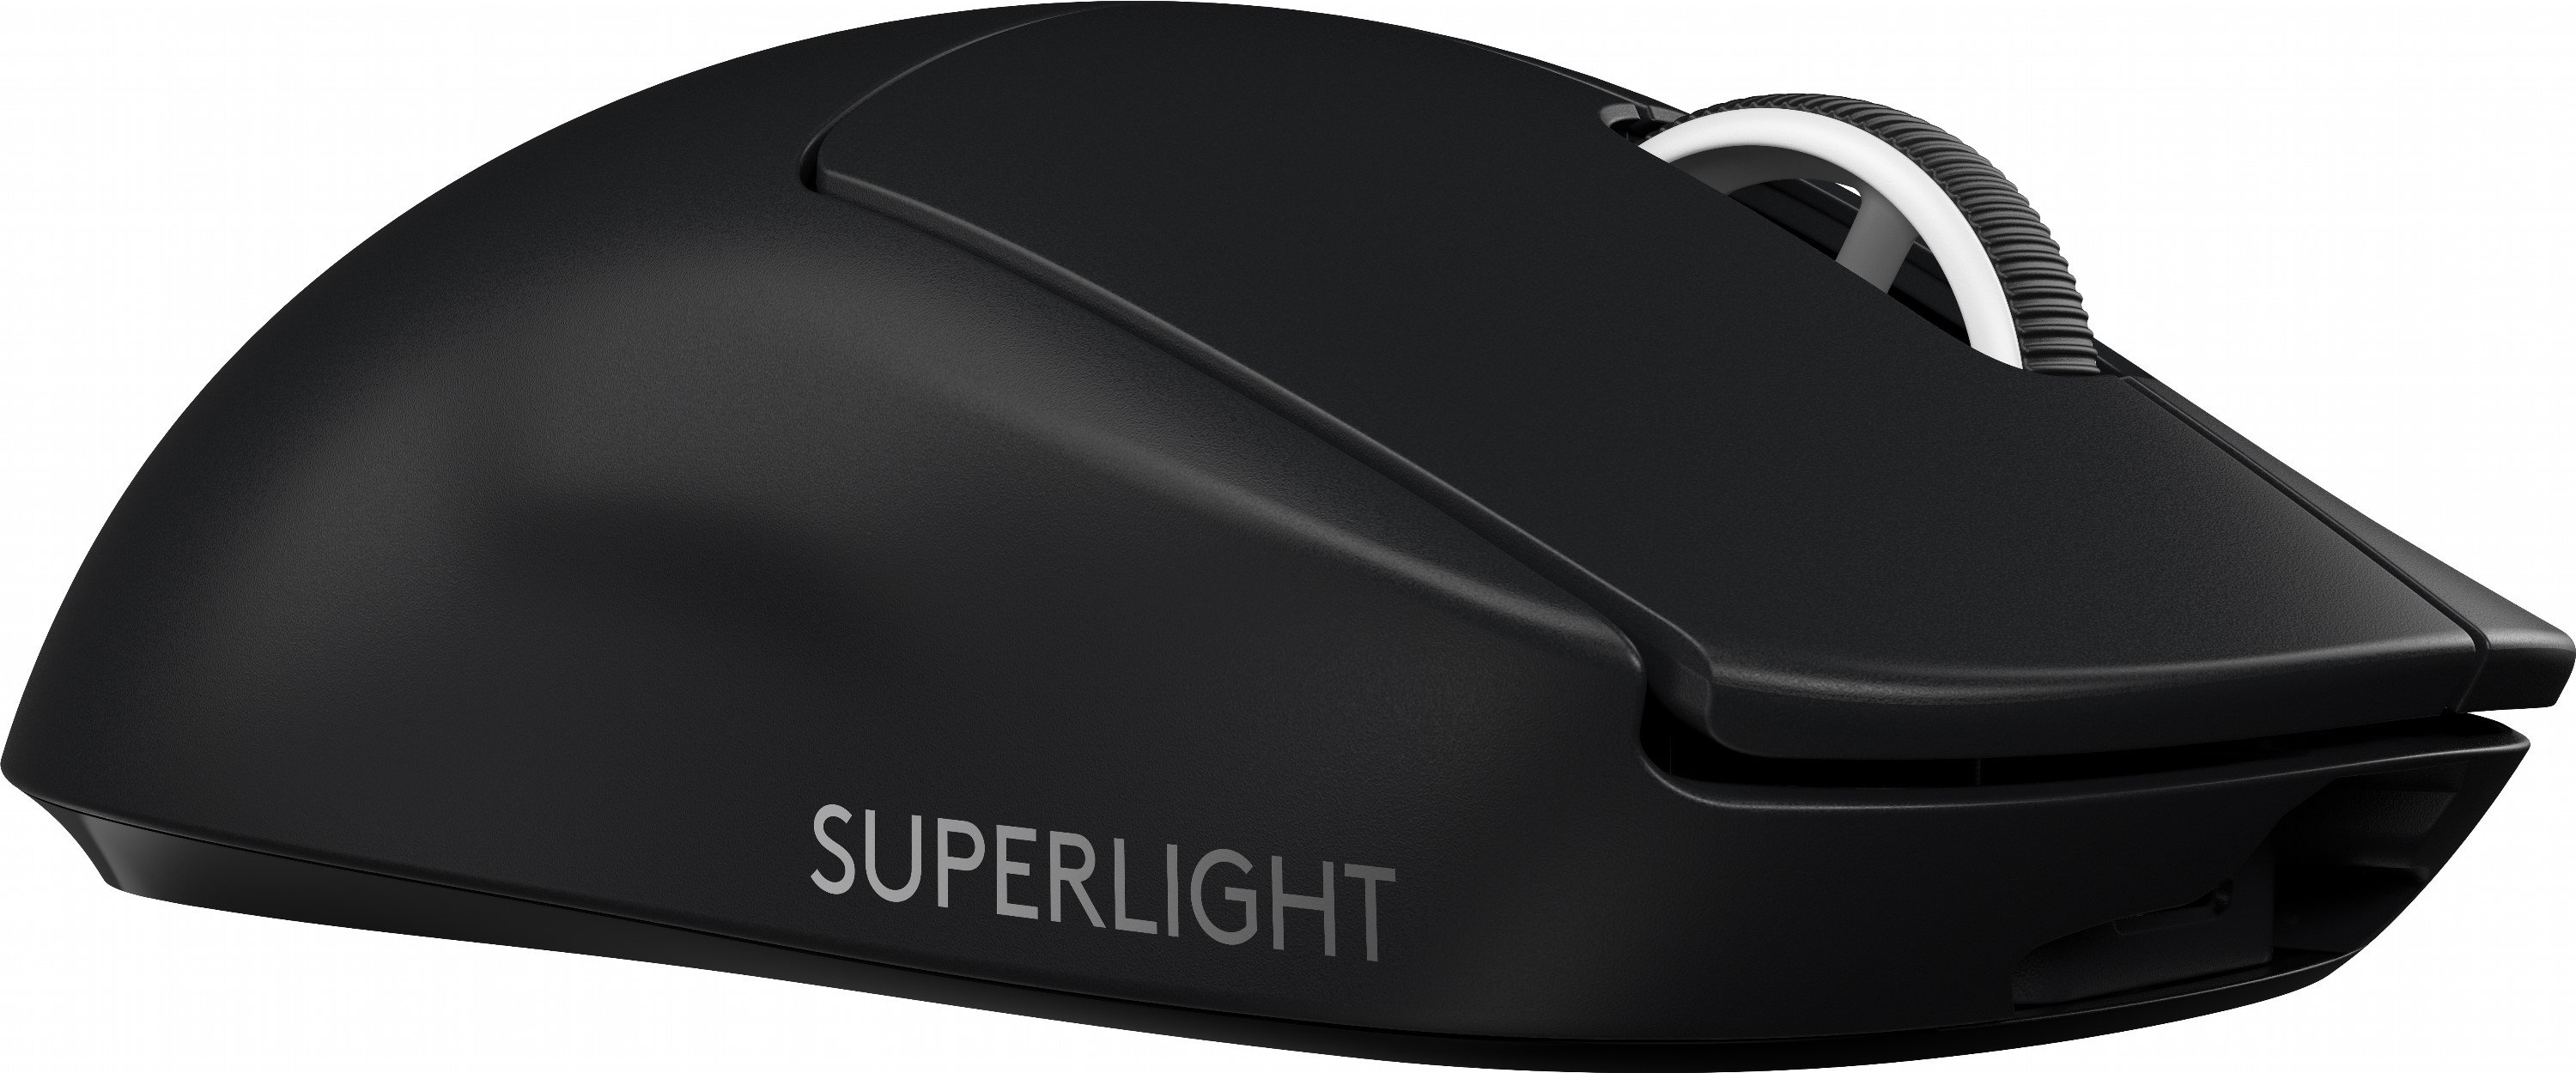 Игровая мышь superlight. Logitech g Pro x Superlight. Logitech g Pro Wireless Superlight. Мышь Logitech 910-005880. Мышь Logitech g Pro x Superlight.